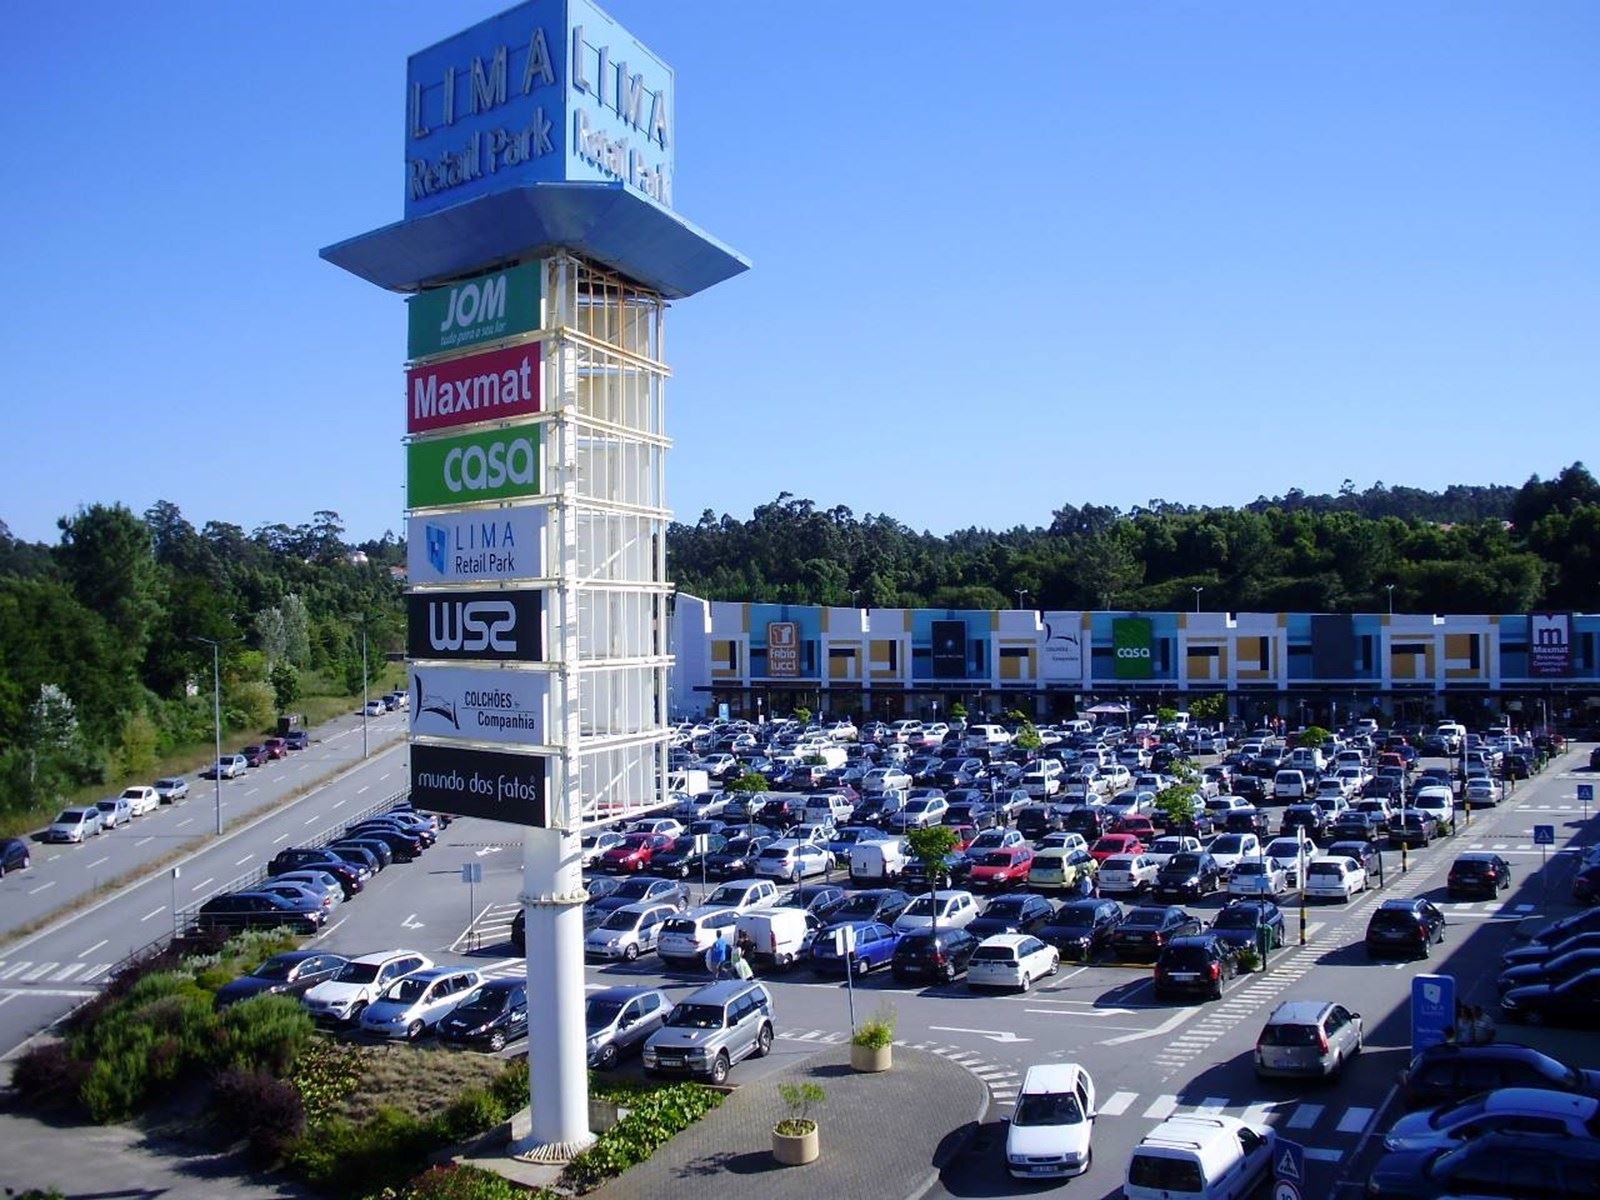 Francesa Sogenial adquire Lima Retail Park por 10 milhões